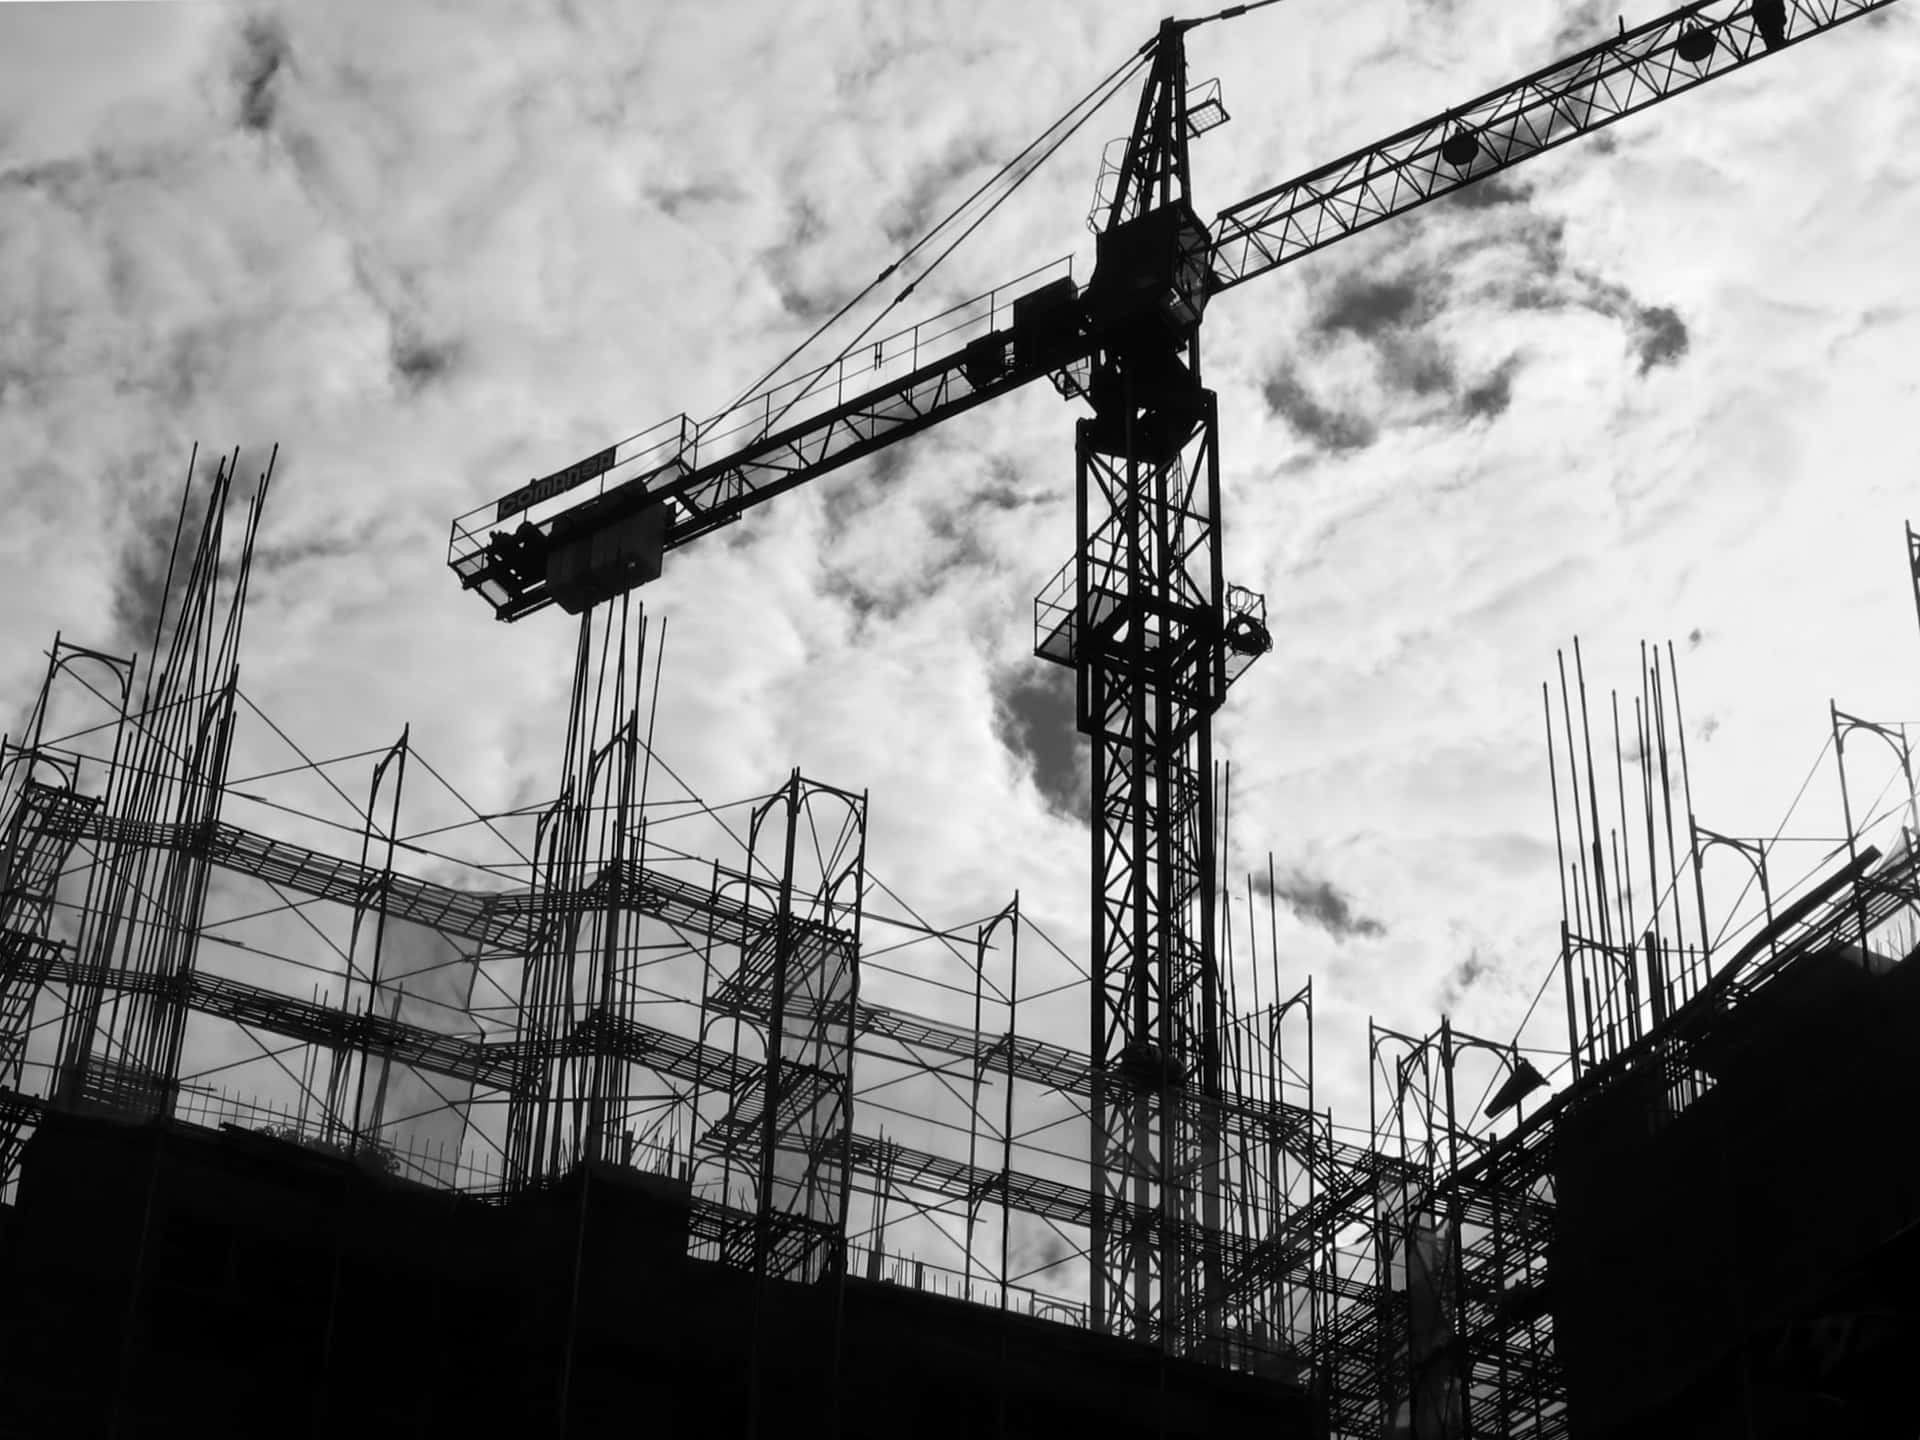 Construction Cranes On A Construction Site